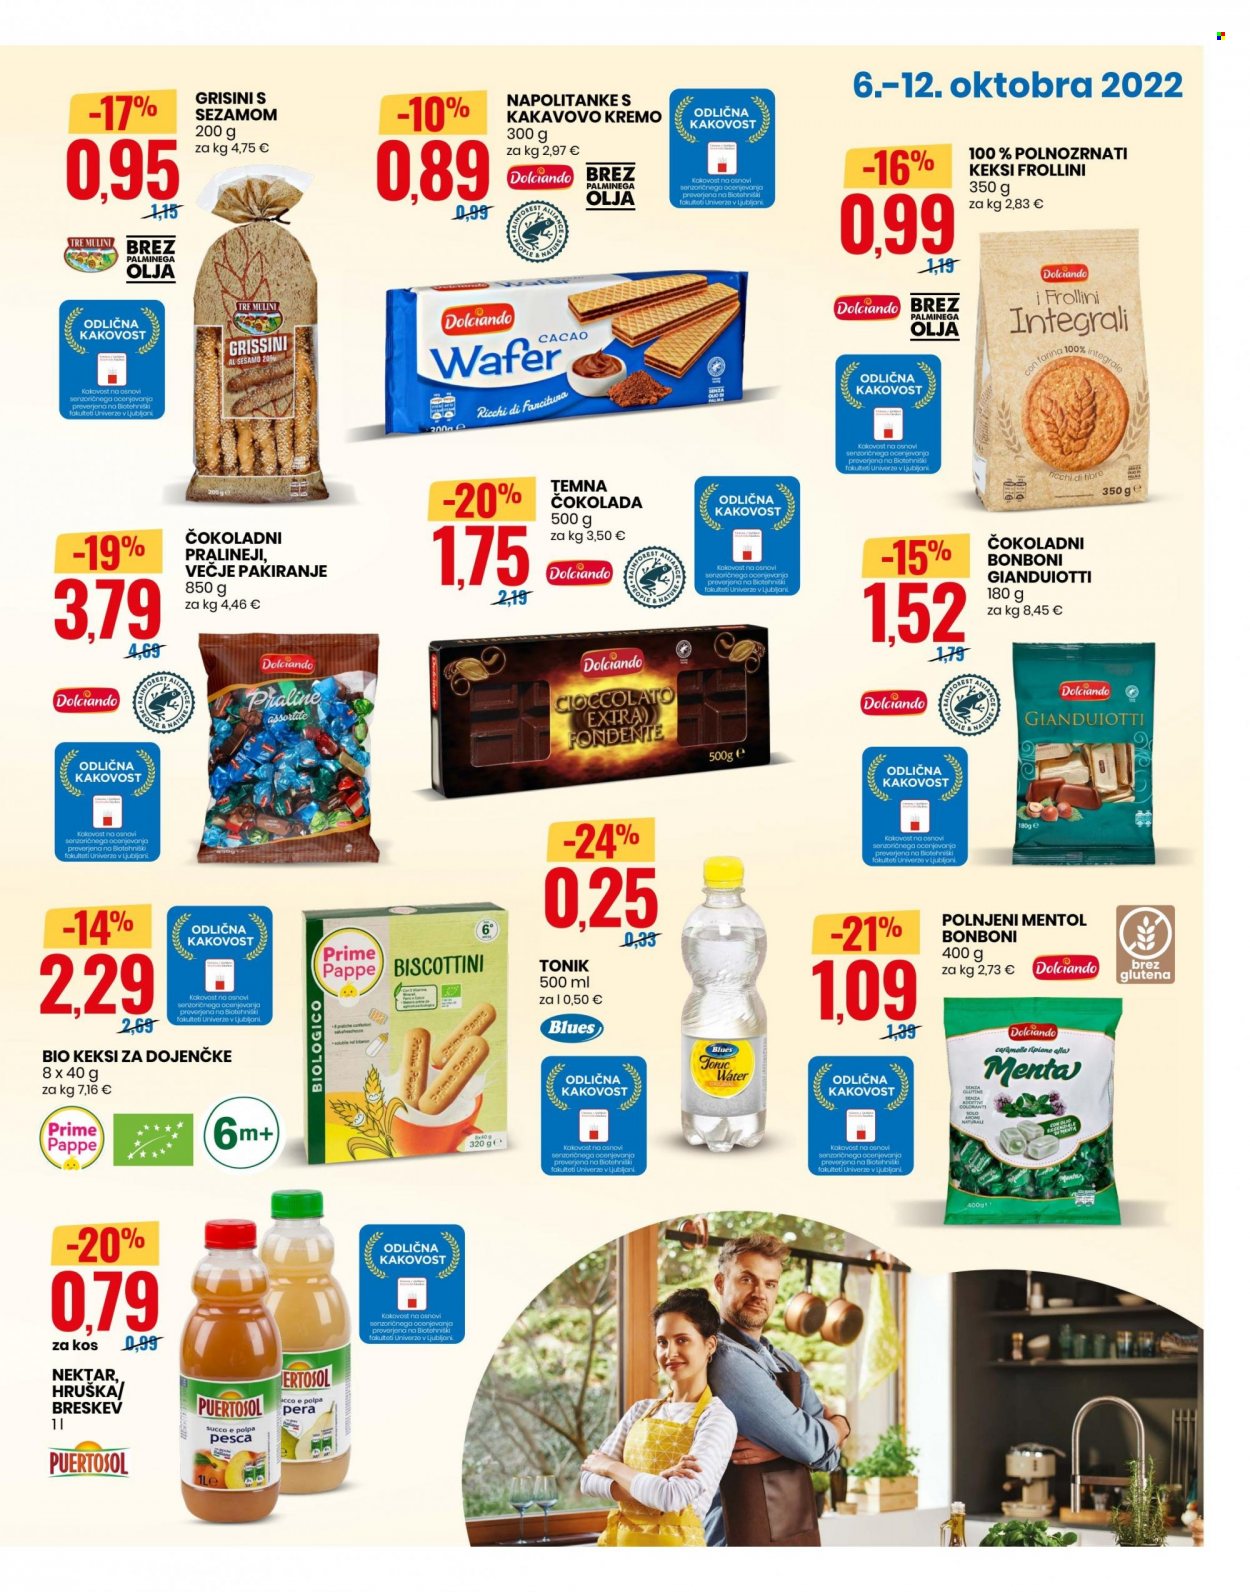 thumbnail - EuroSpin katalog - 6.10.2022 - 12.10.2022 - Ponudba izdelkov - nektar, tonic, Tre Mulini, bonboni, čokolada, keksi, napolitanke, pralineji, temna čokolada, grisini, olje. Stran 3.